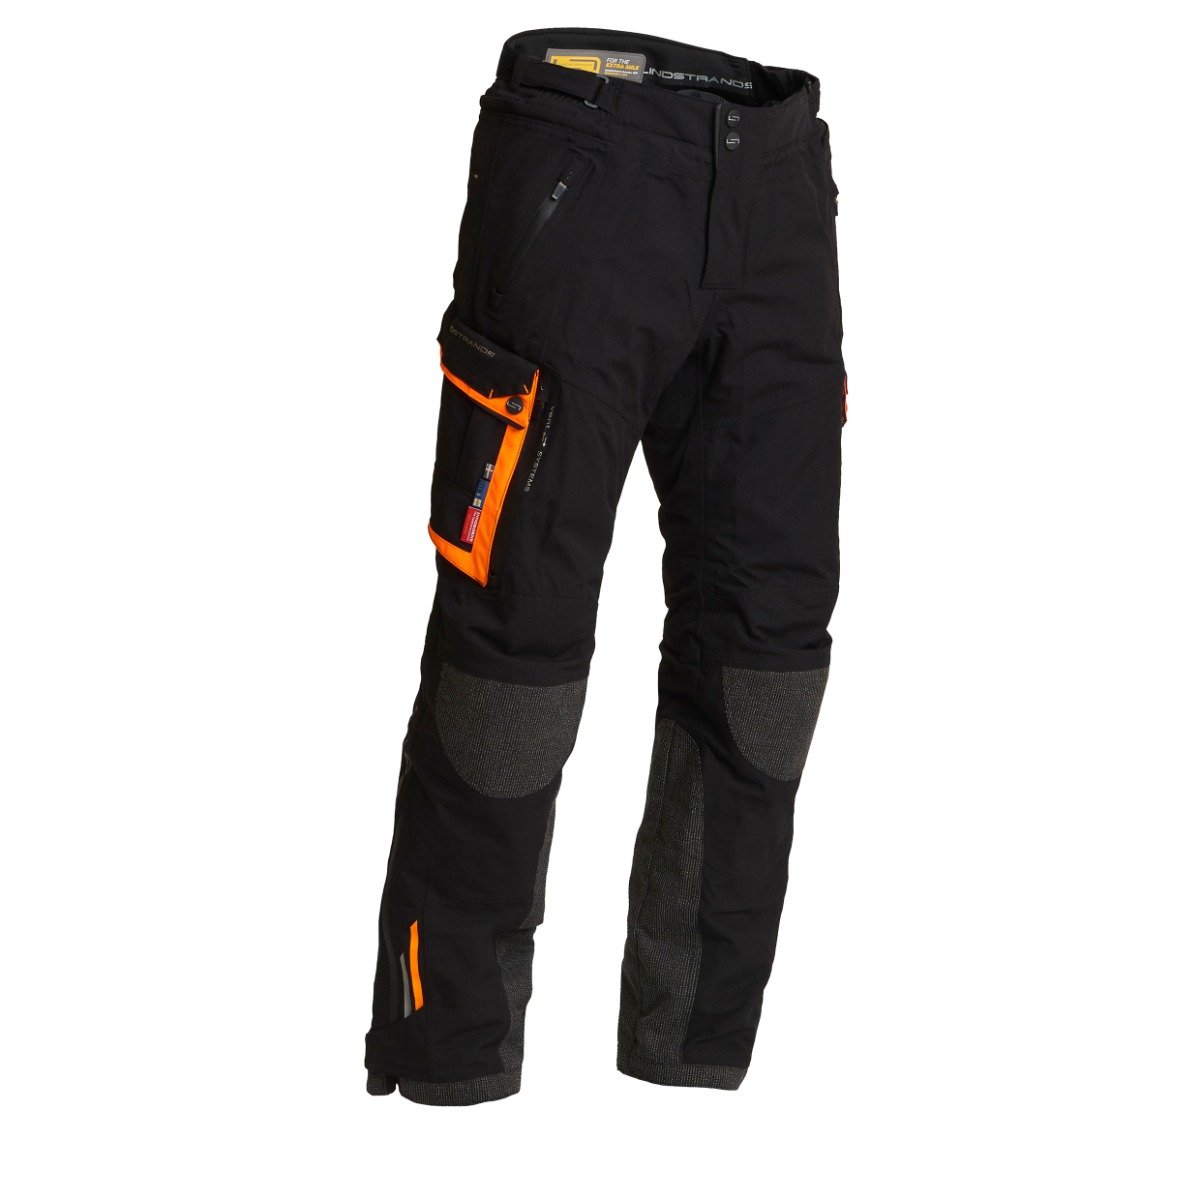 Image of Lindstrands Textile Pants Sunne Black Orange Size 56 ID 6438235187731